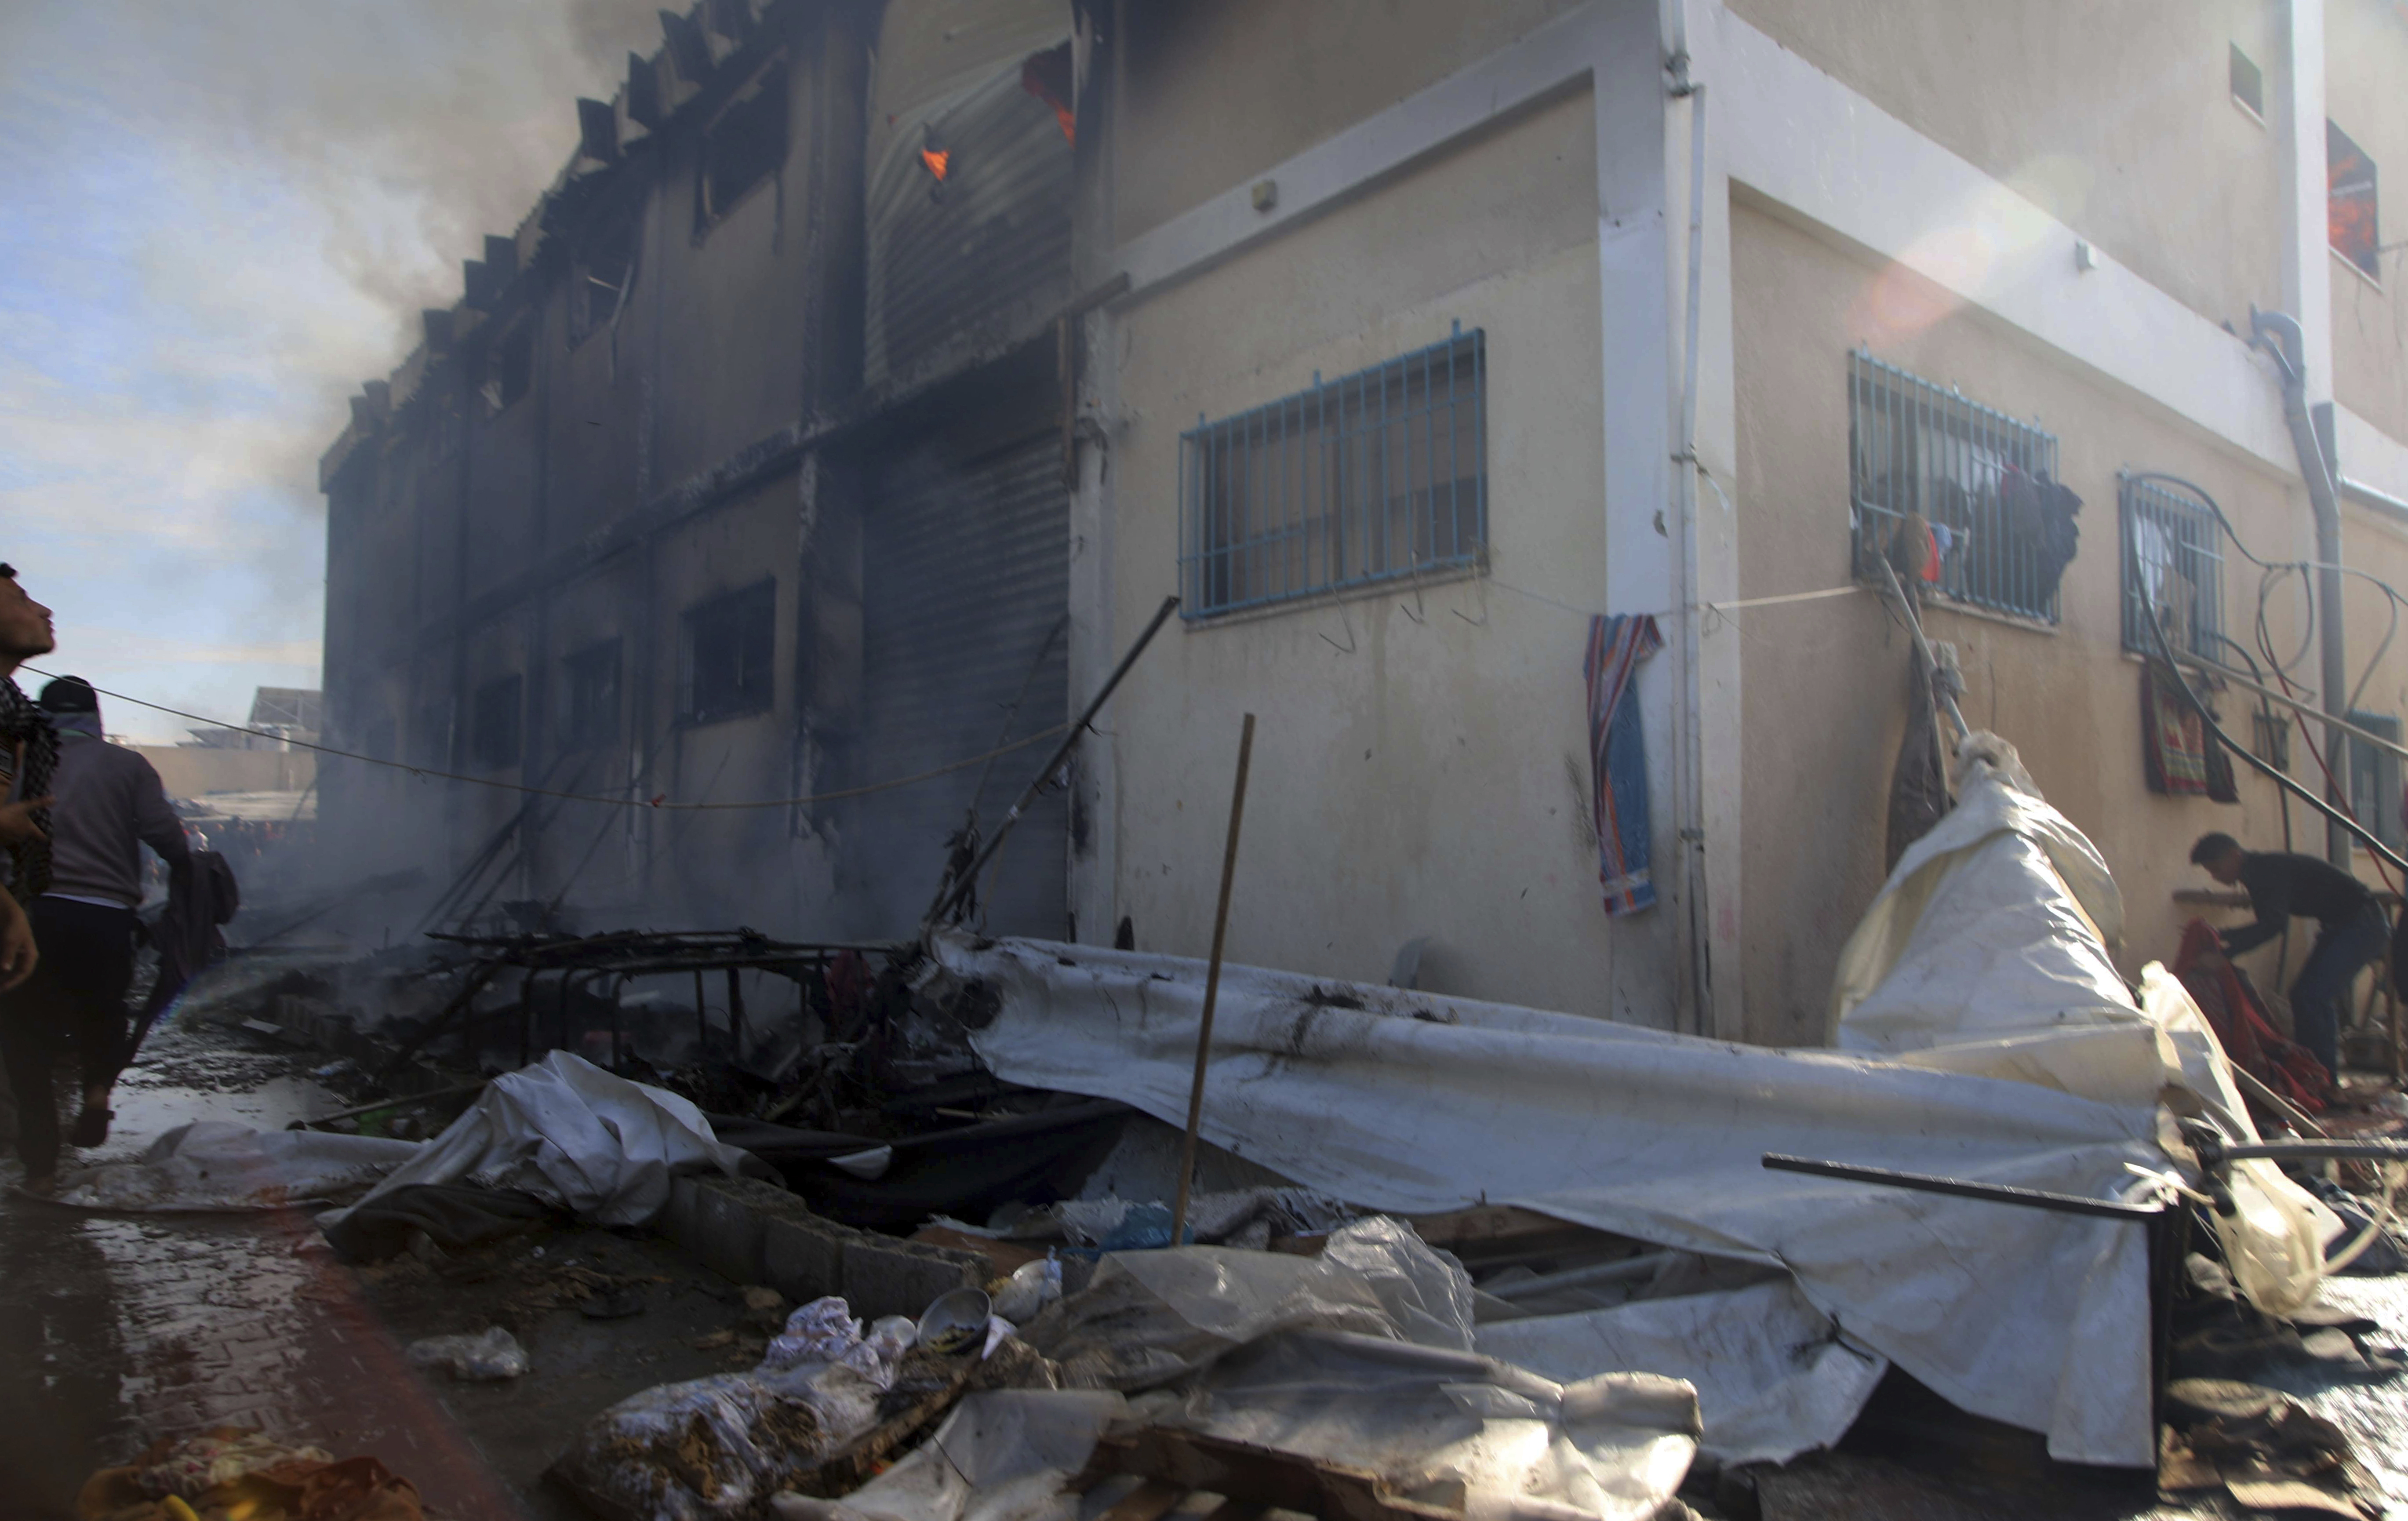 联合国驻加沙大楼遭袭，美国罕见谴责 A8f63a31fff846a7a6bbd66d7e1e080a